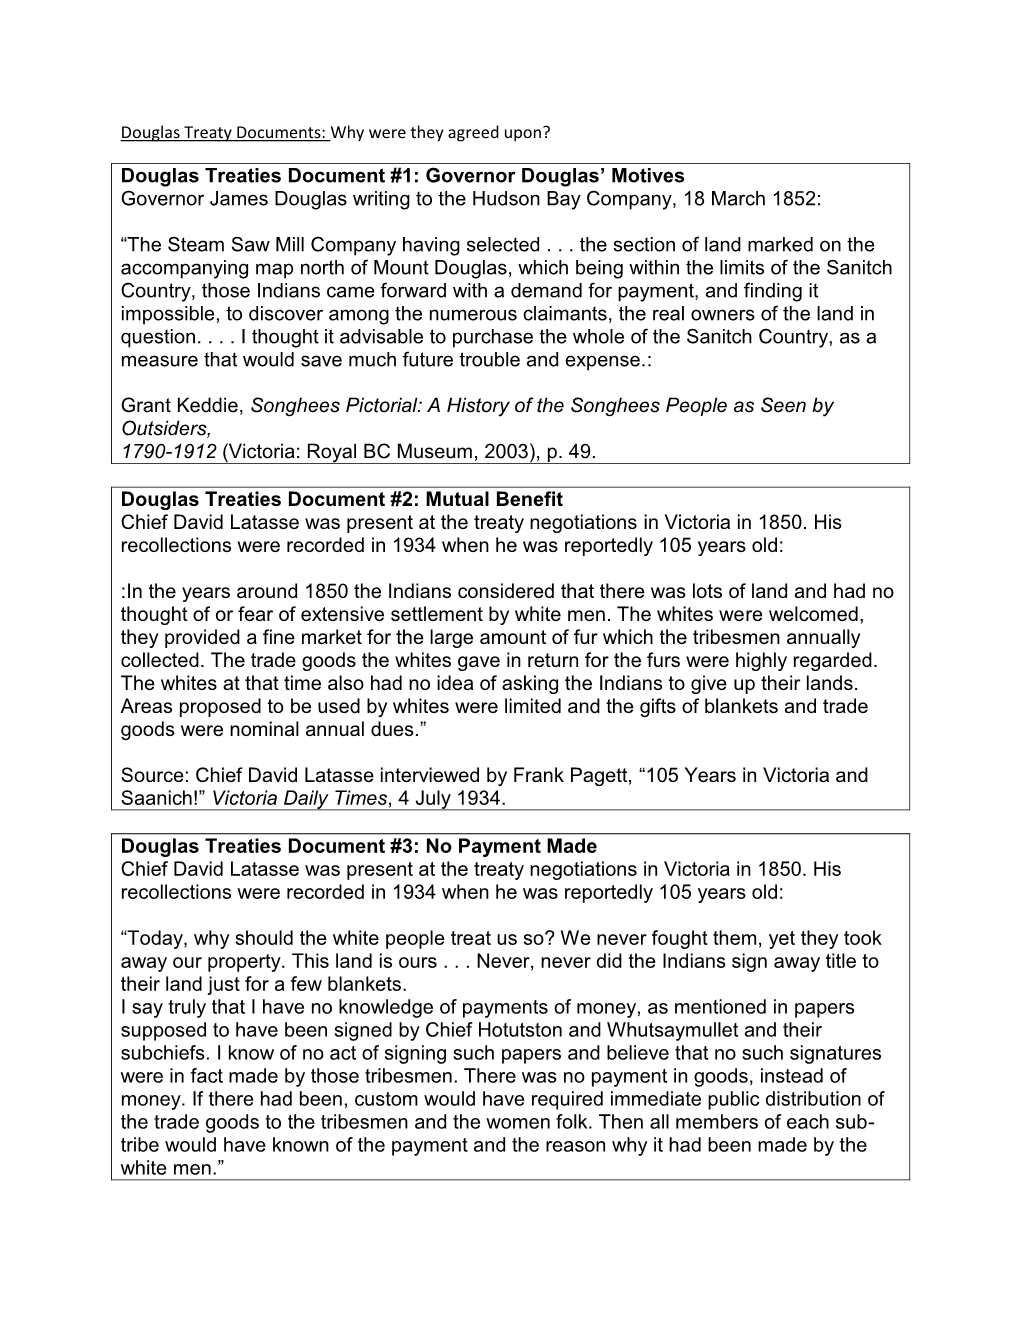 Douglas Treaties Document #1: Governor Douglas' Motives